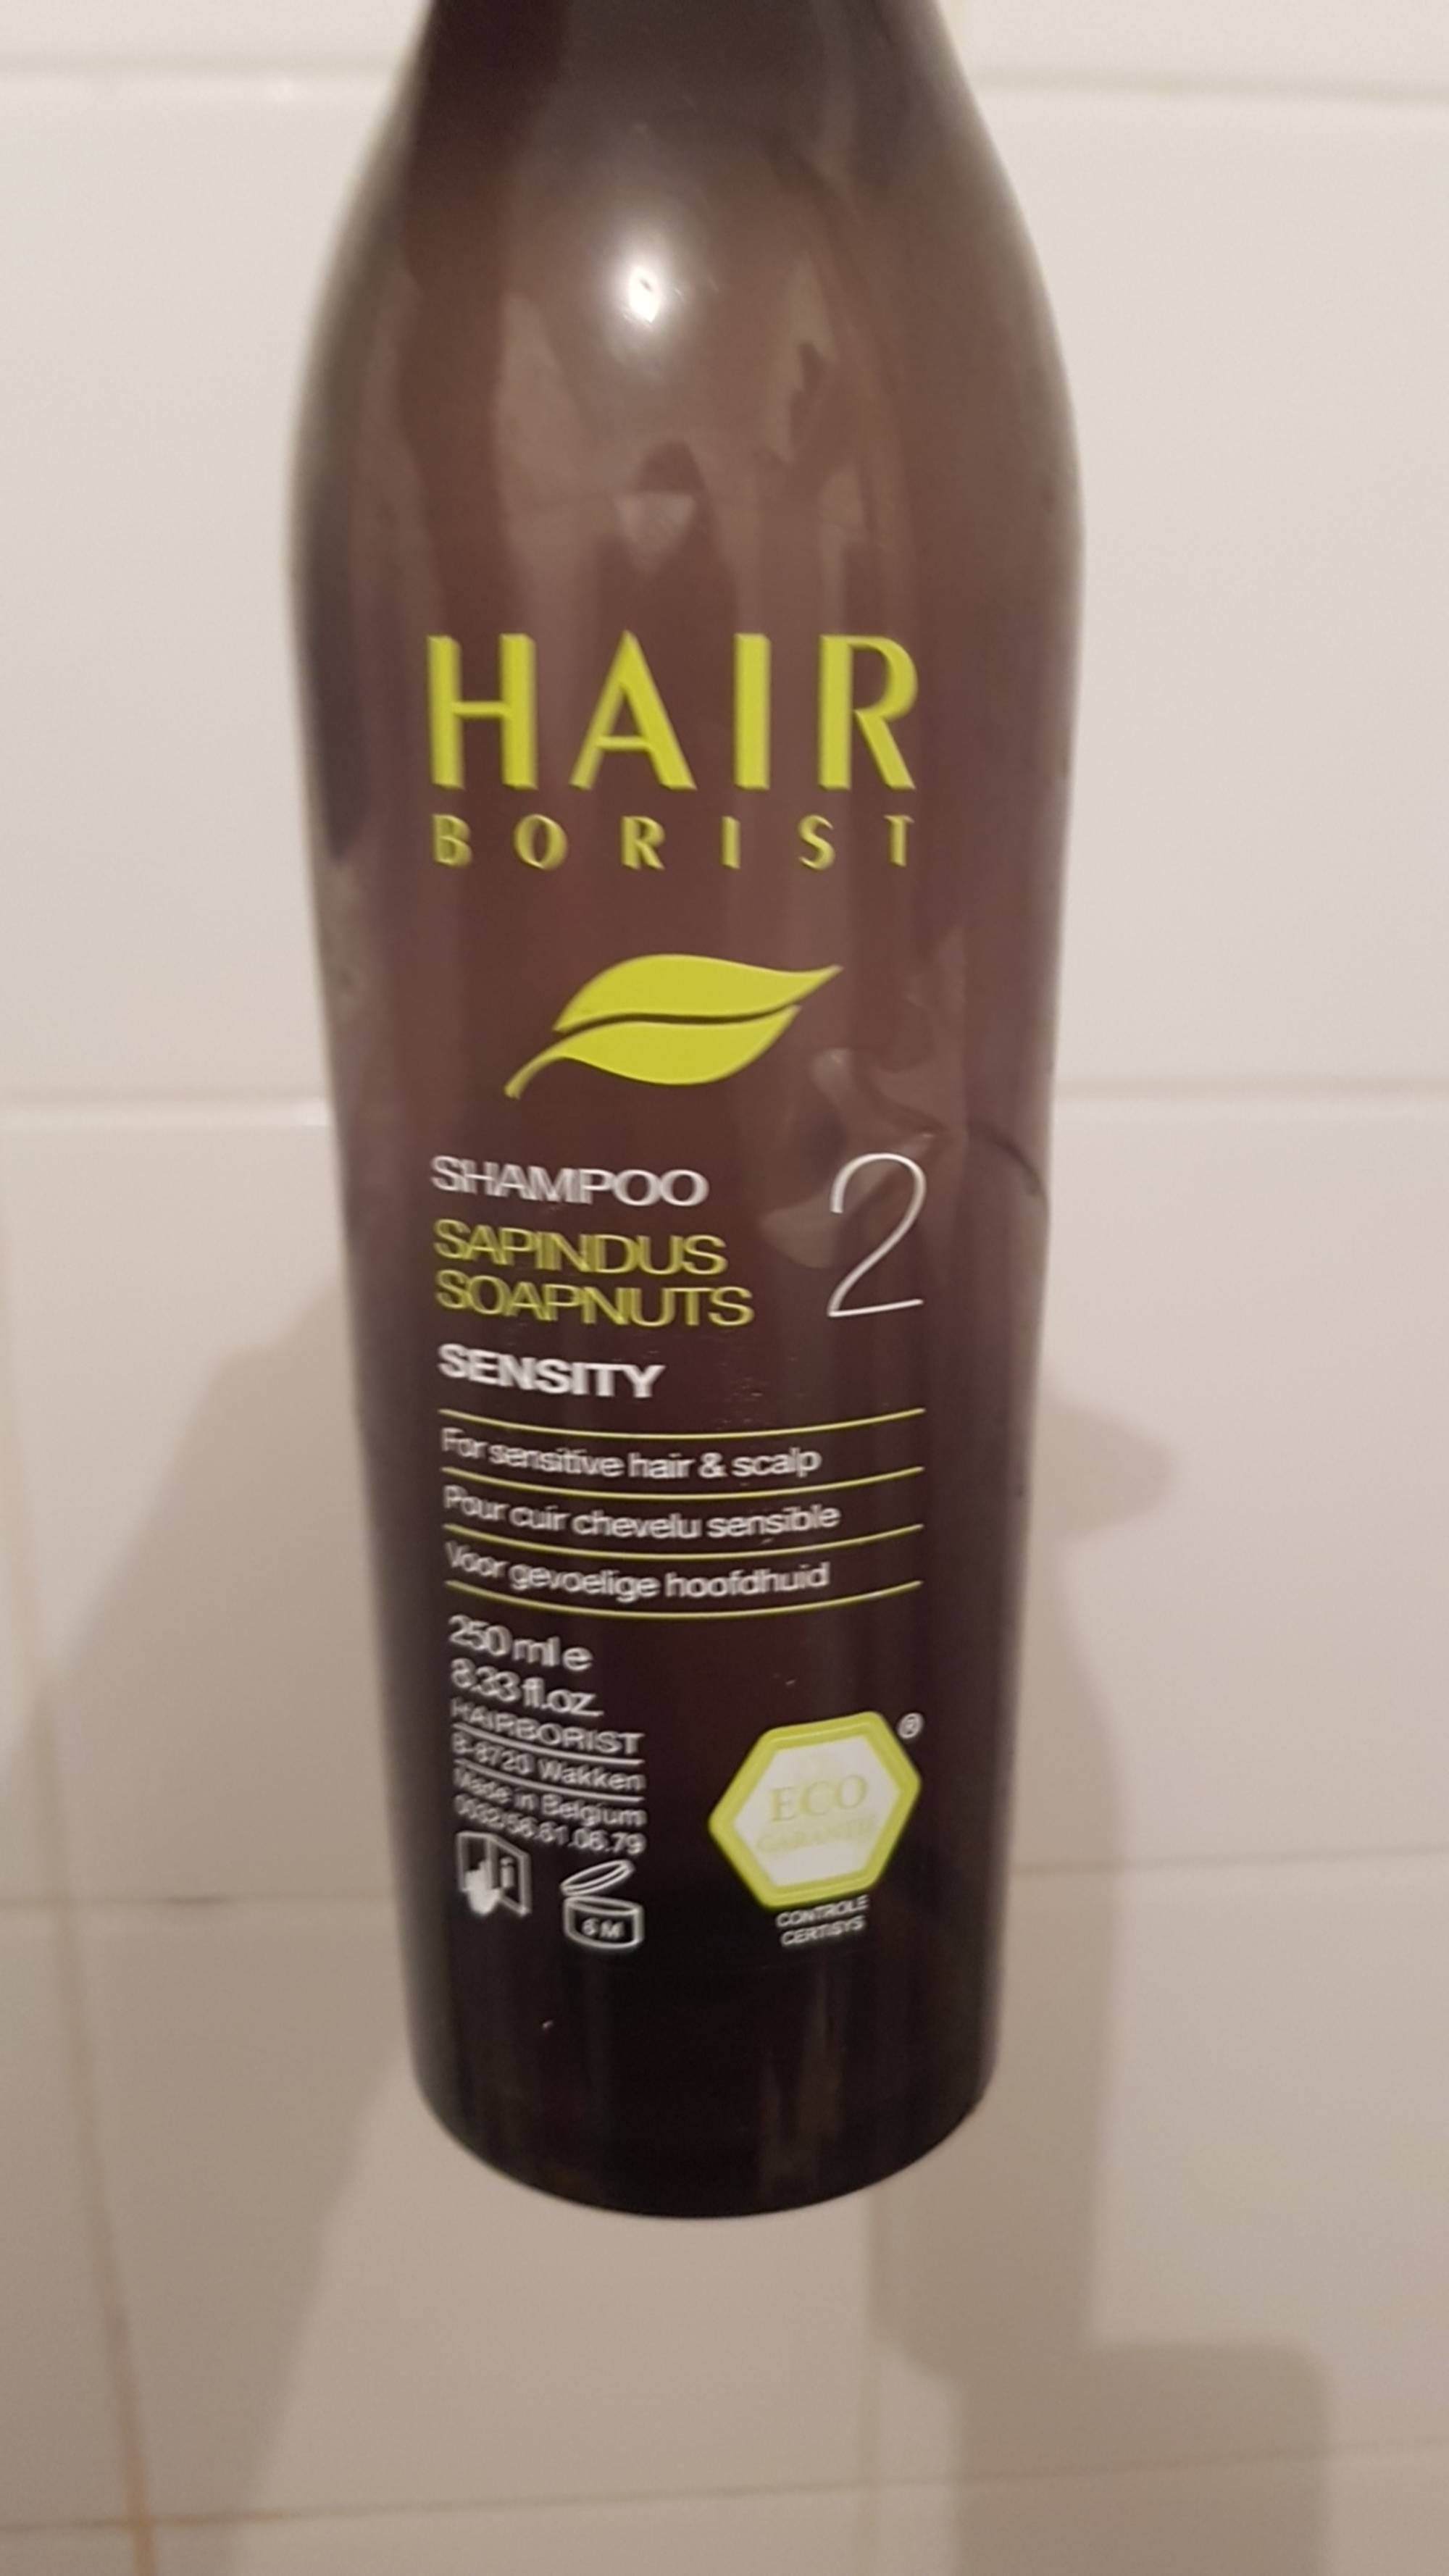 HAIR BORIST - Sensity - Shampoo sapindus soapnuts 2